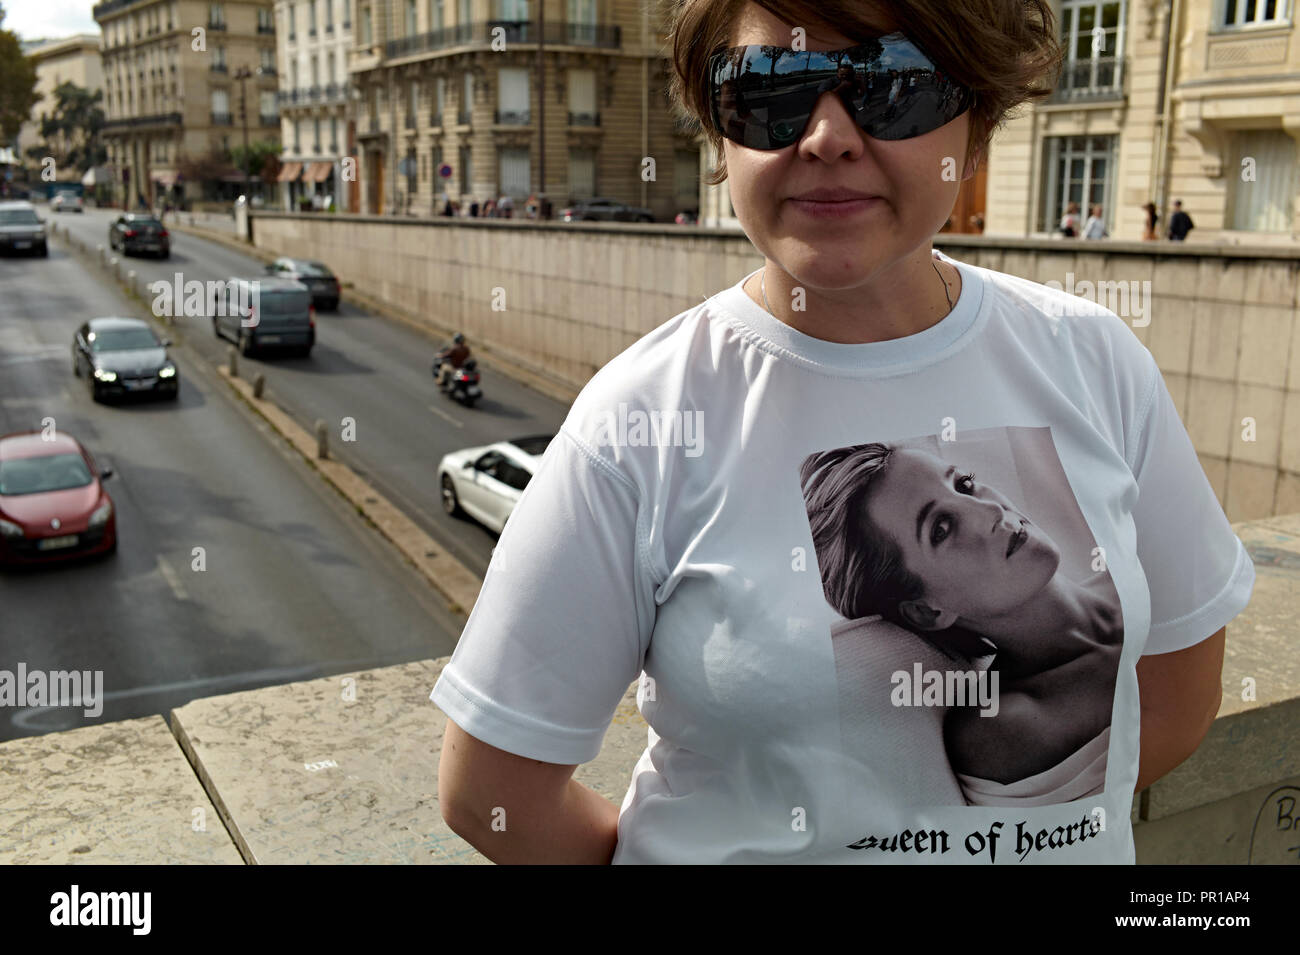 Pont de l'Alma tunnel dans Paris, France. Étaient Diana, princesse de Galles, avait perdu la vie dans un accident de voiture. Banque D'Images